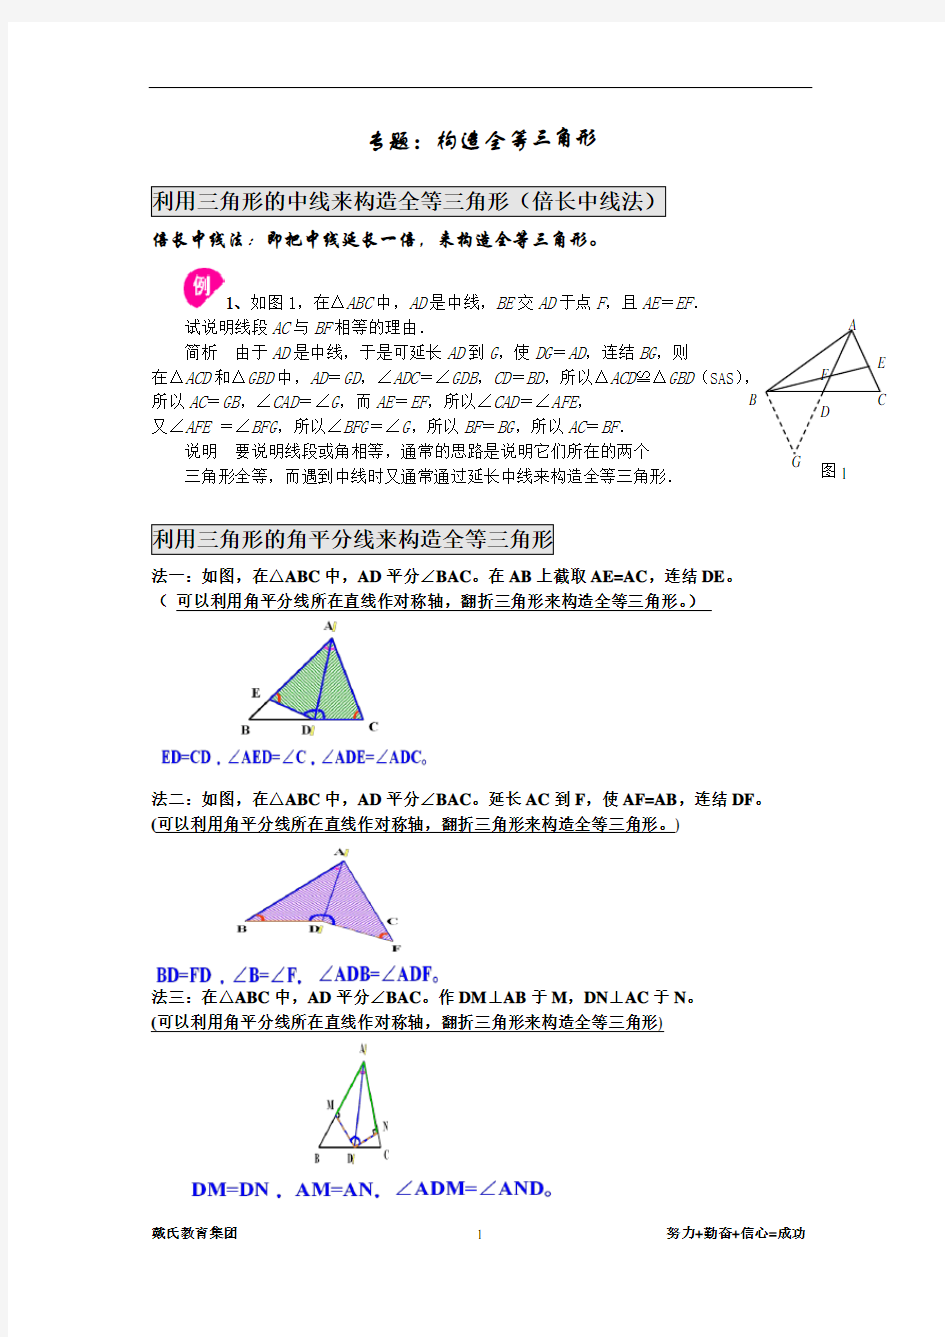 专题：构造全等三角形方法总结